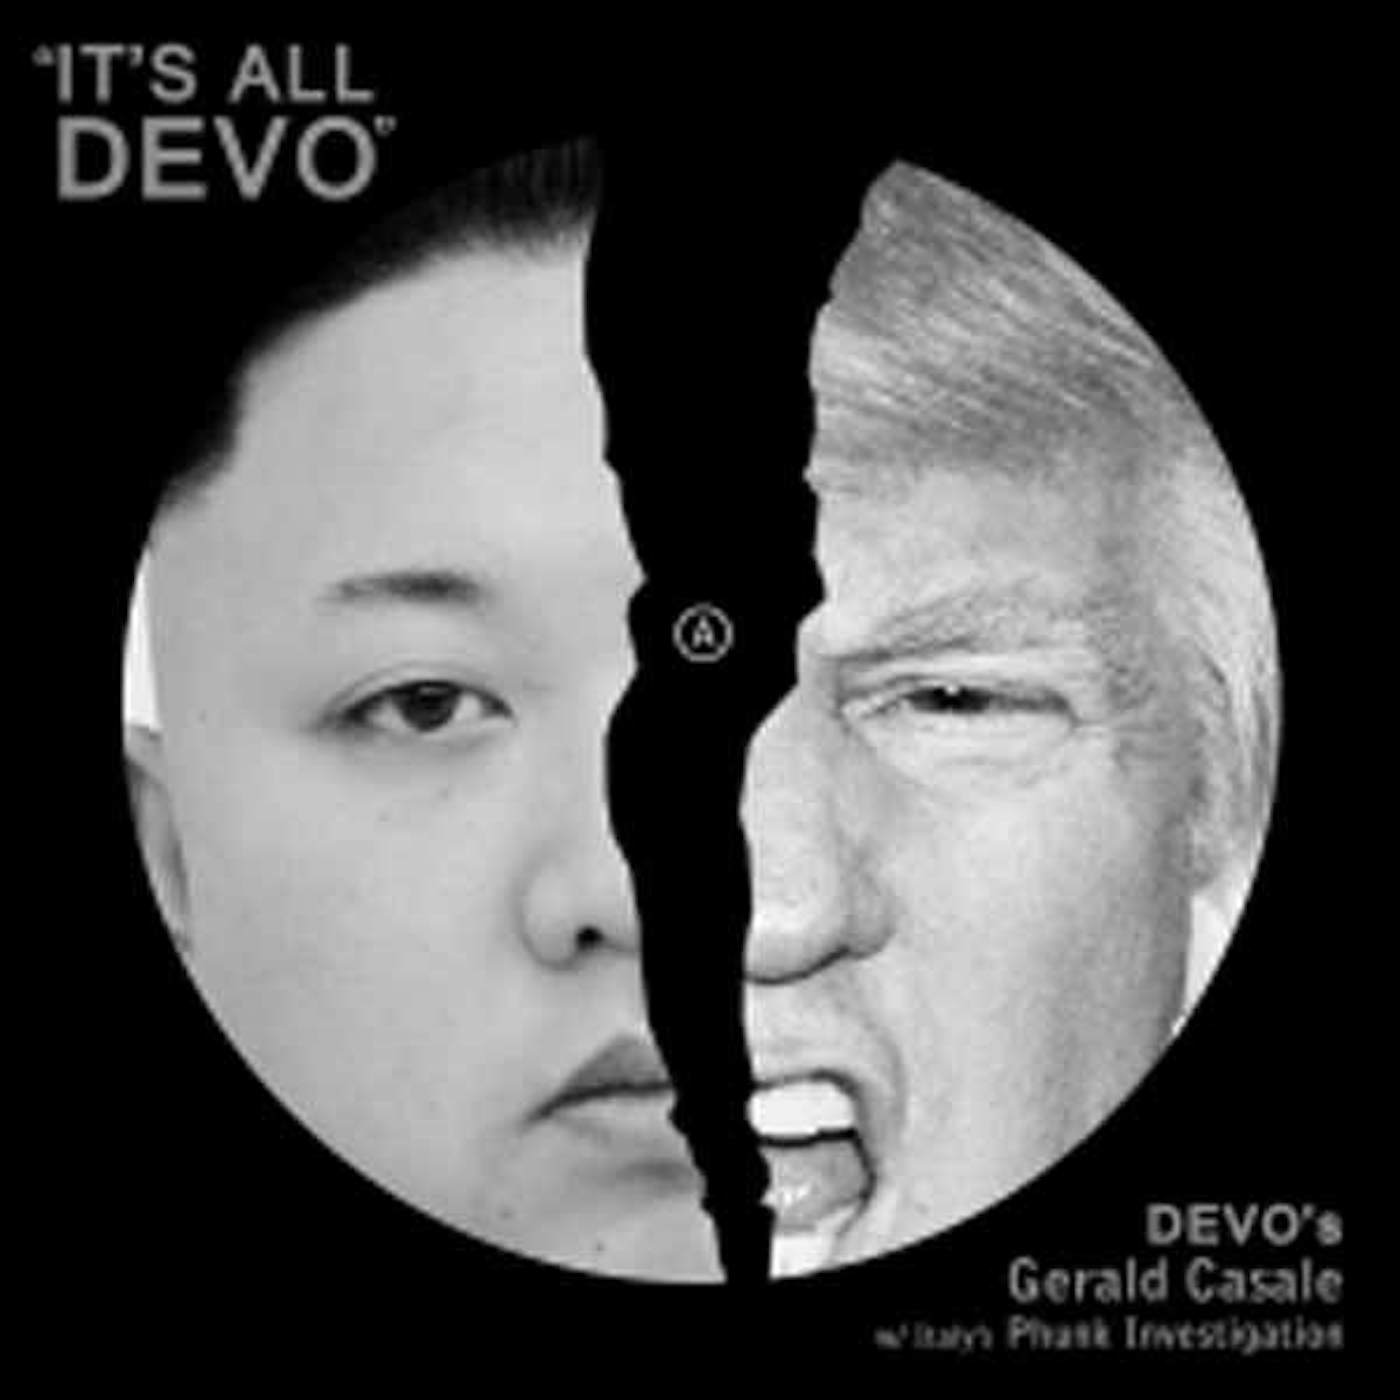 DEVO's Gerald V. Casale LP - It'S All Devo Picture Disc (Vinyl)